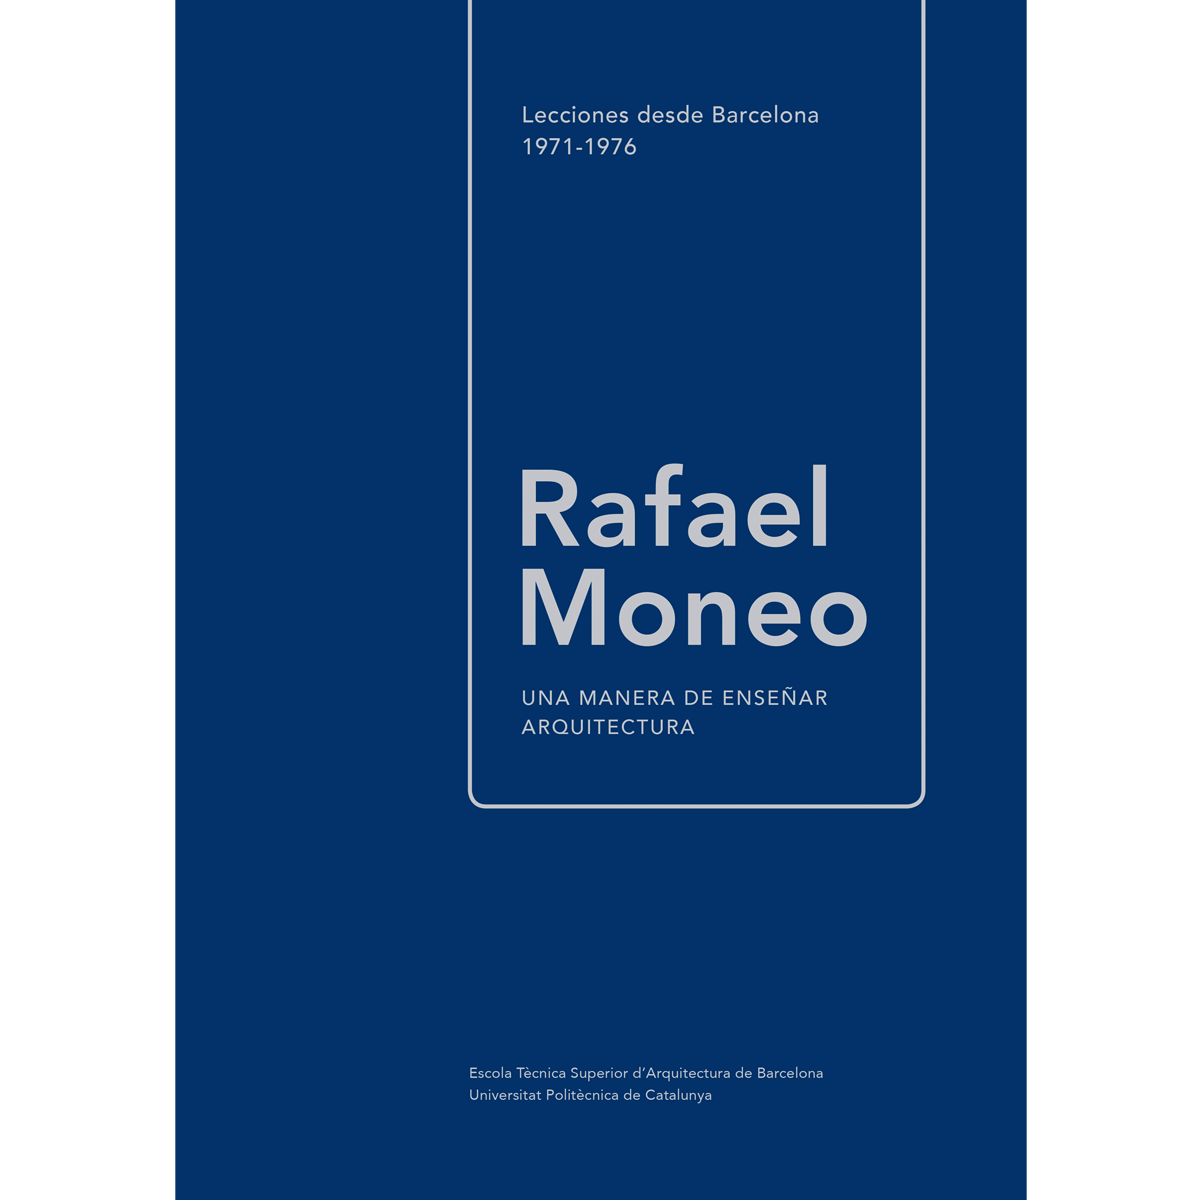 Rafael Moneo: una manera de enseñar arquitectura